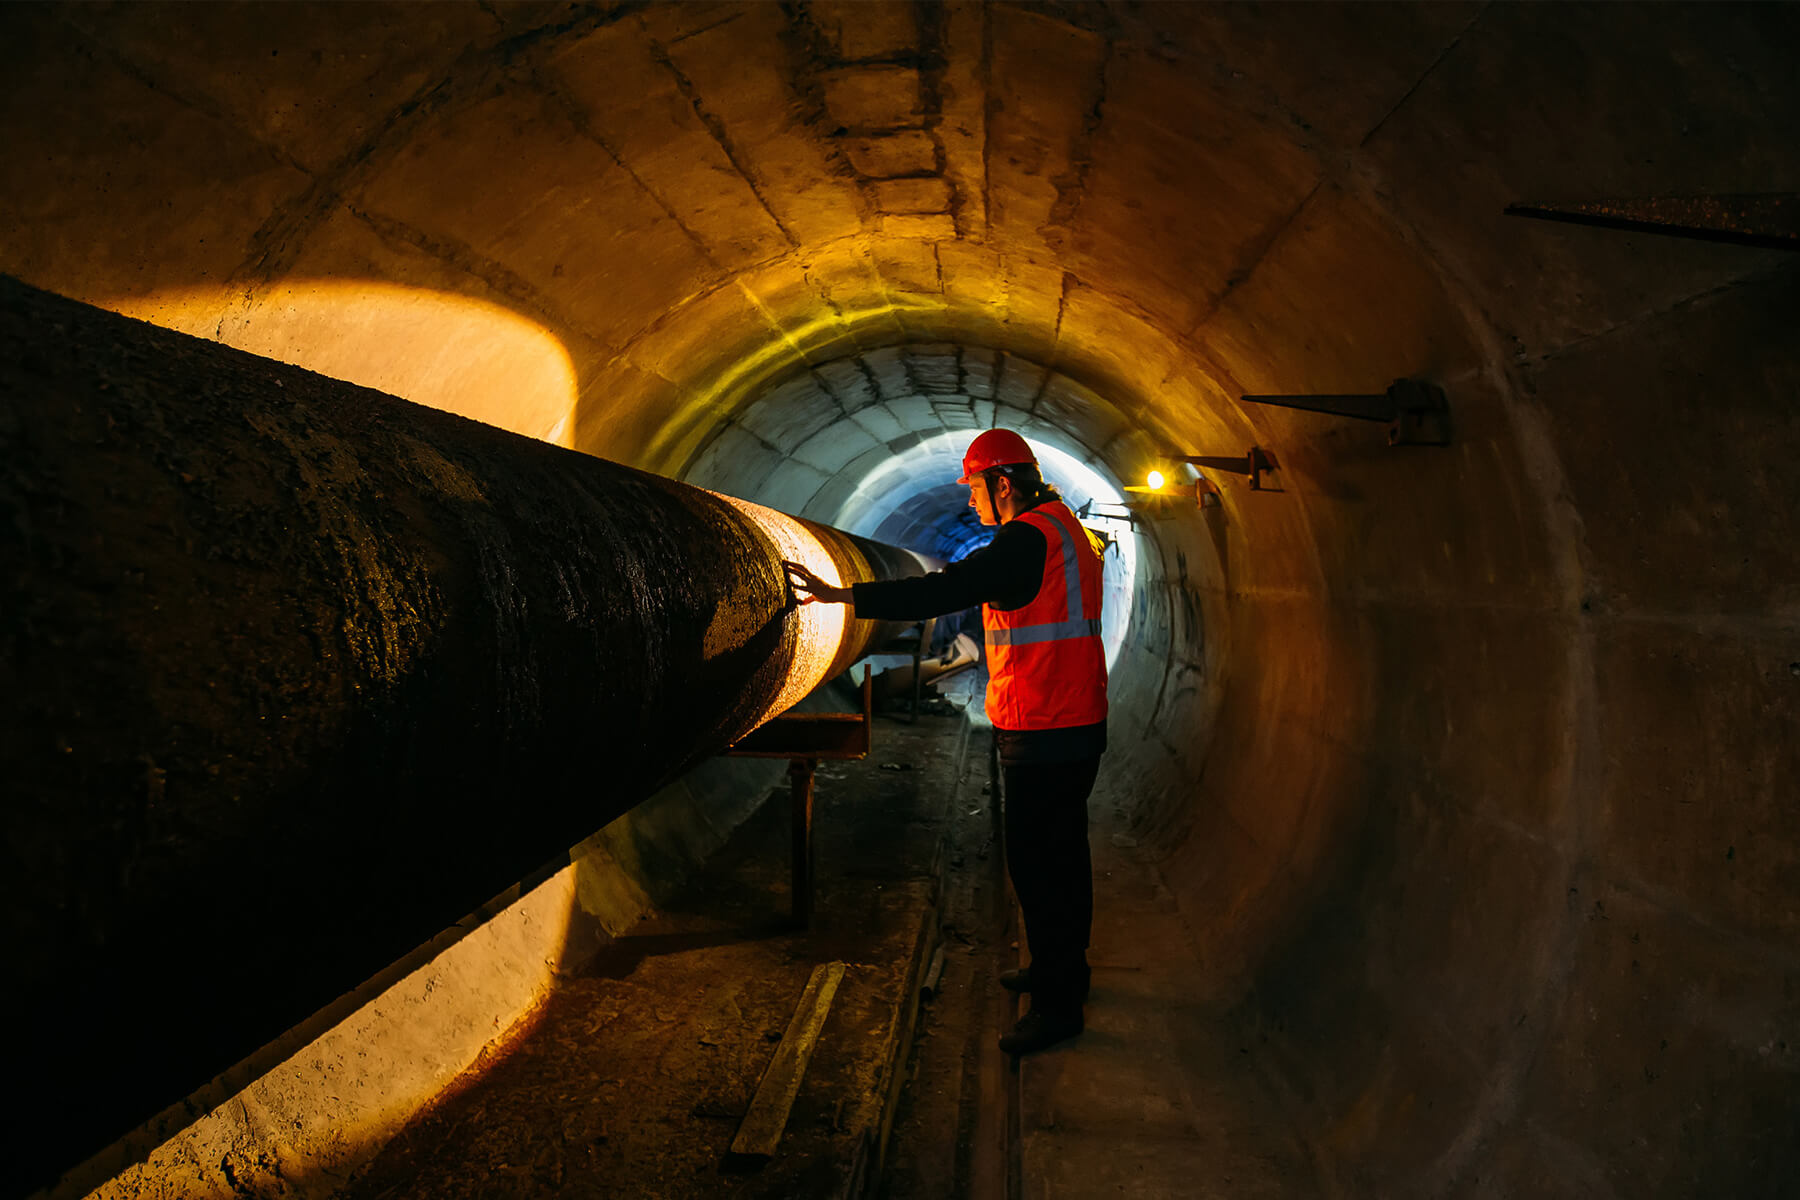 Eine Person mit Schutzweste und Helm steht in einem dunklen Tunnel. Er beleuchtet mit einer Arbeitslampe einen Teil eines Rohres und betrachtet diesen.